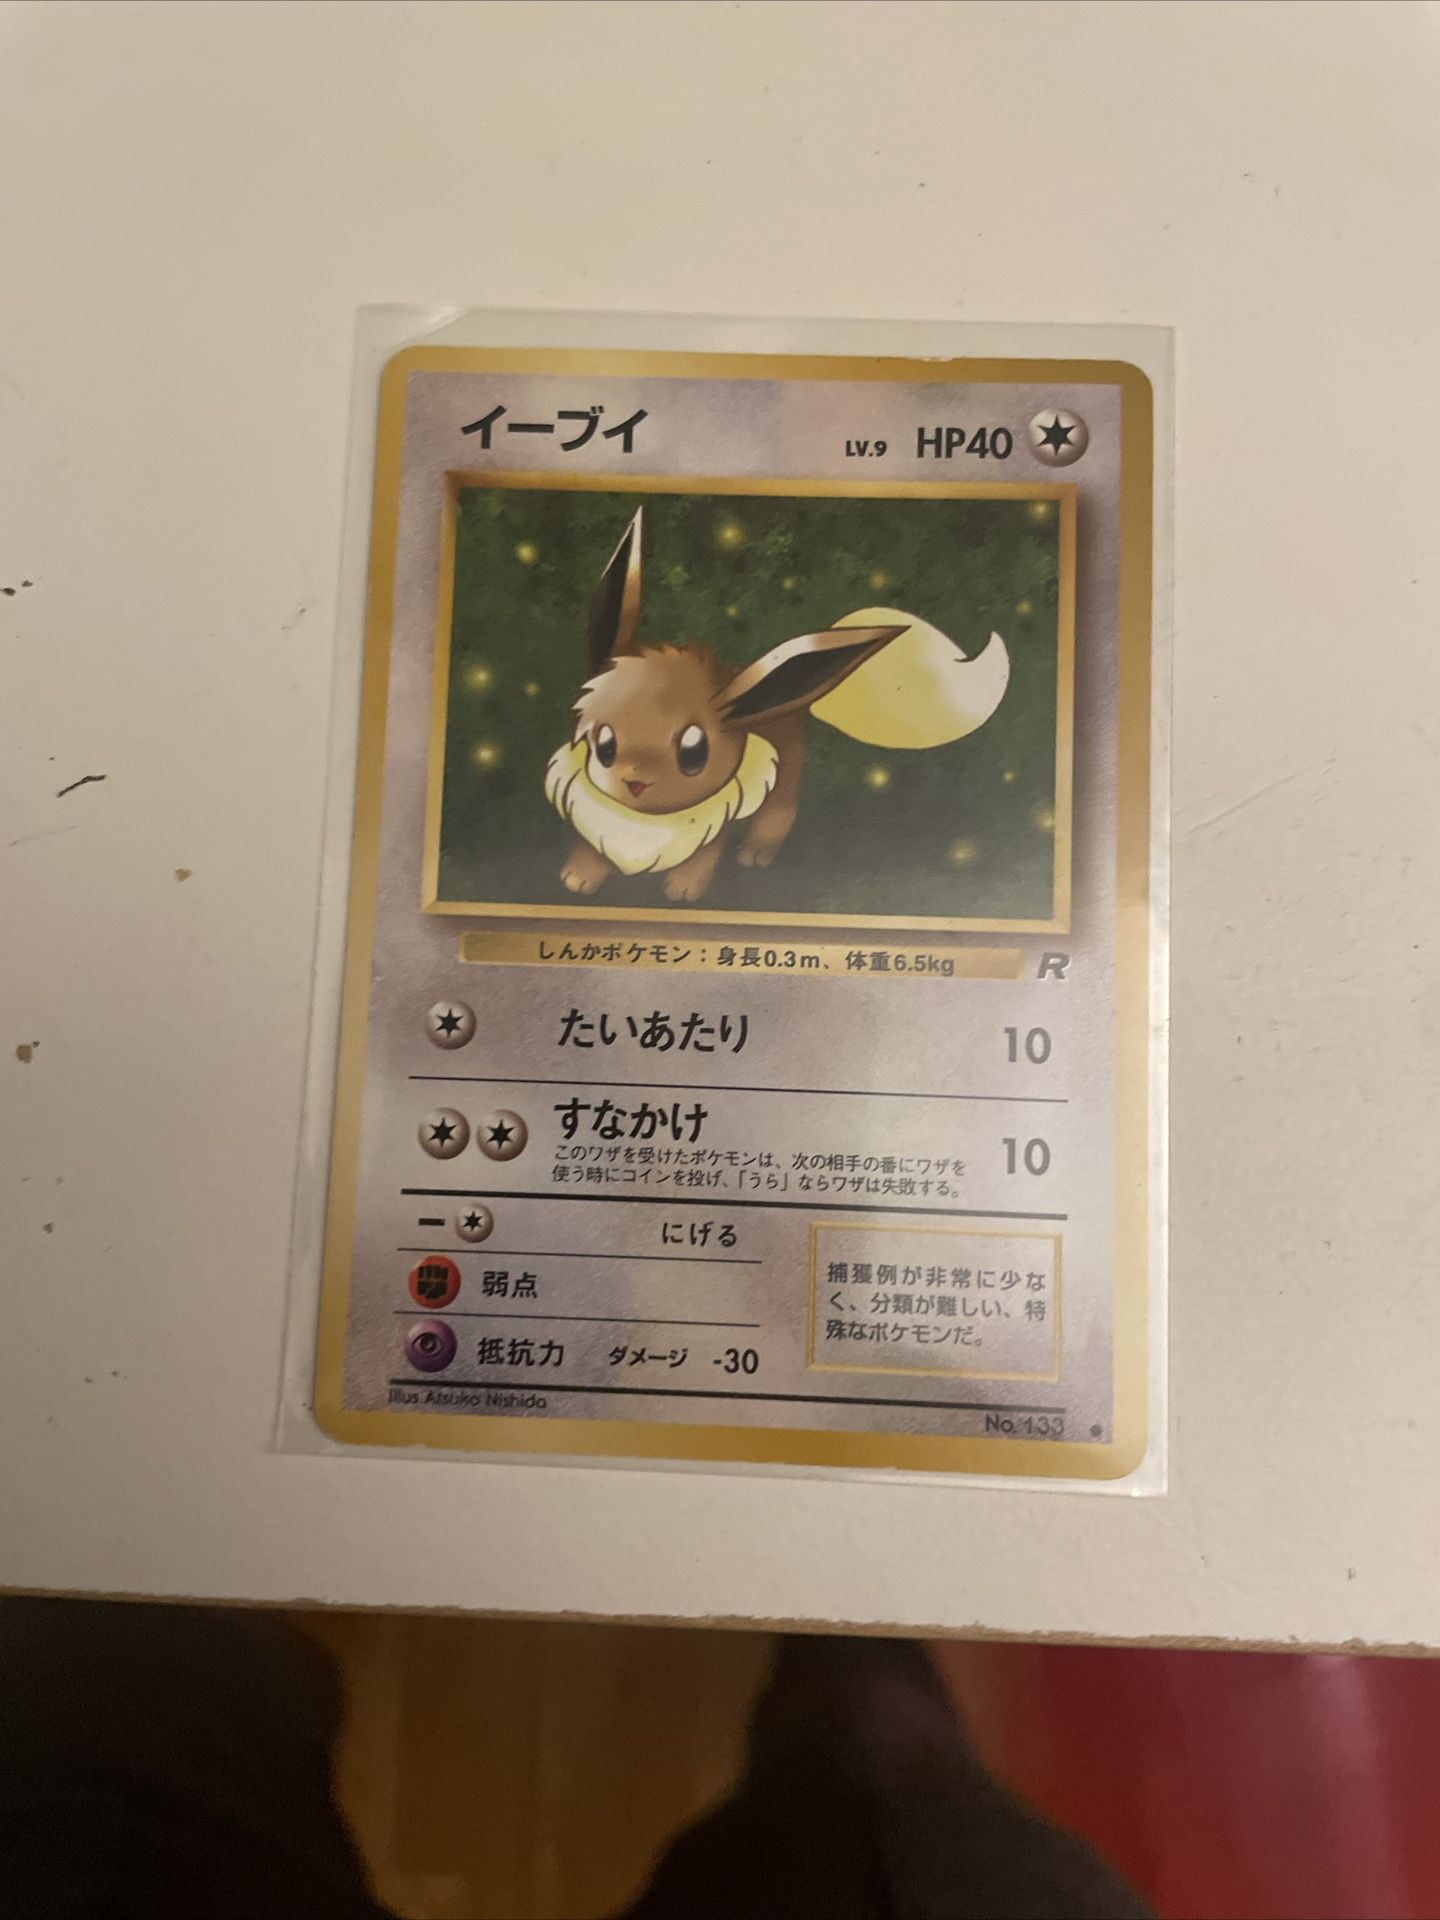 Eevee 1998 Japanese Pokémon Card #133